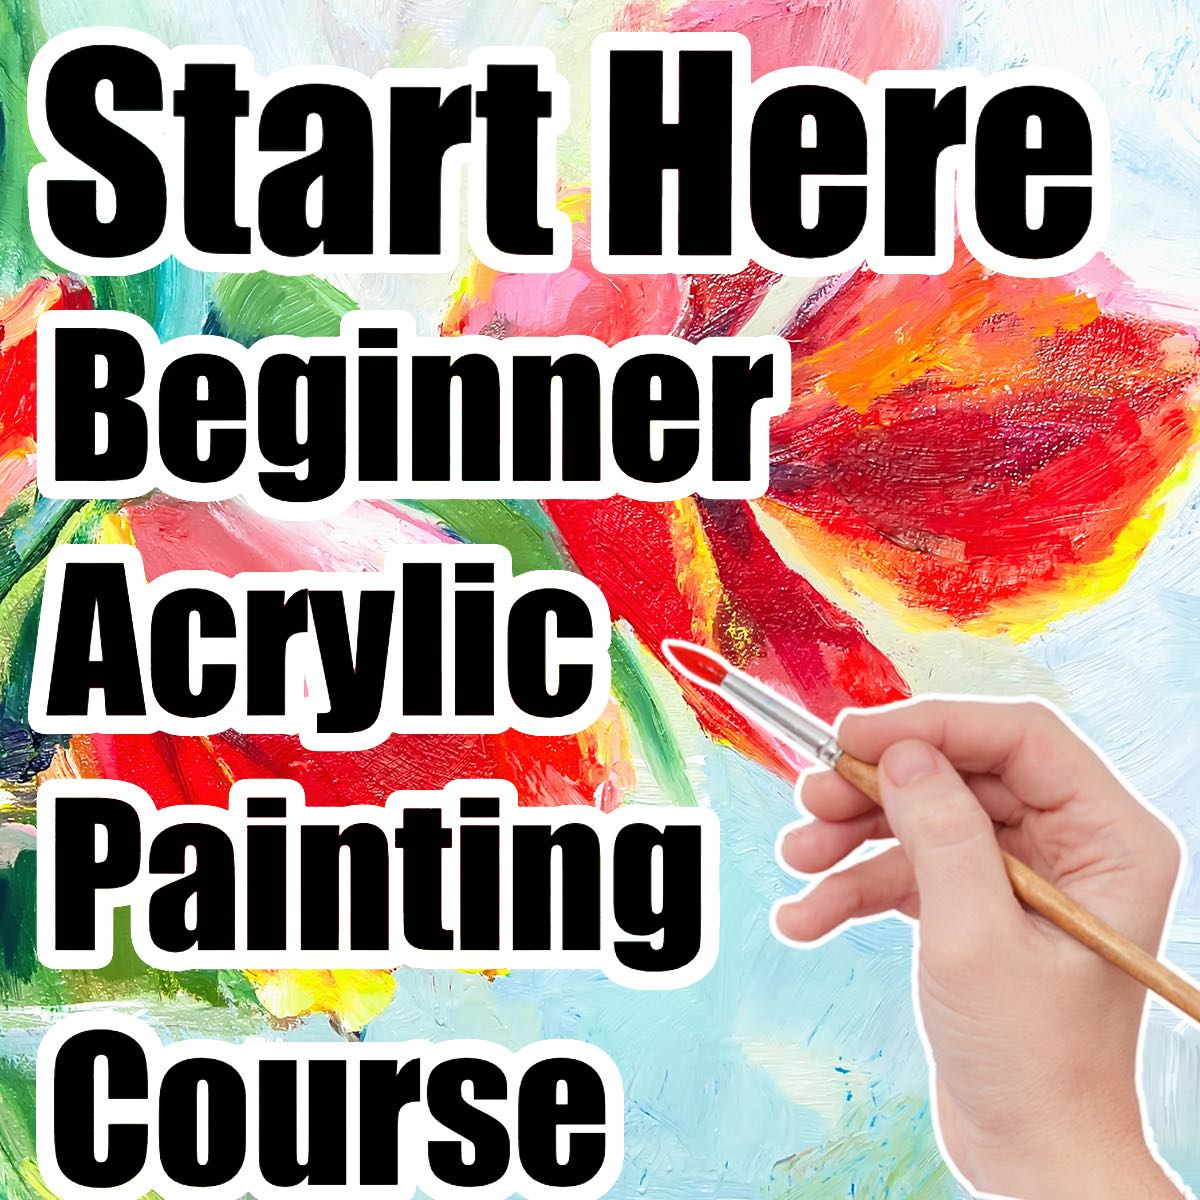 The Art Sherpa Beginner Course